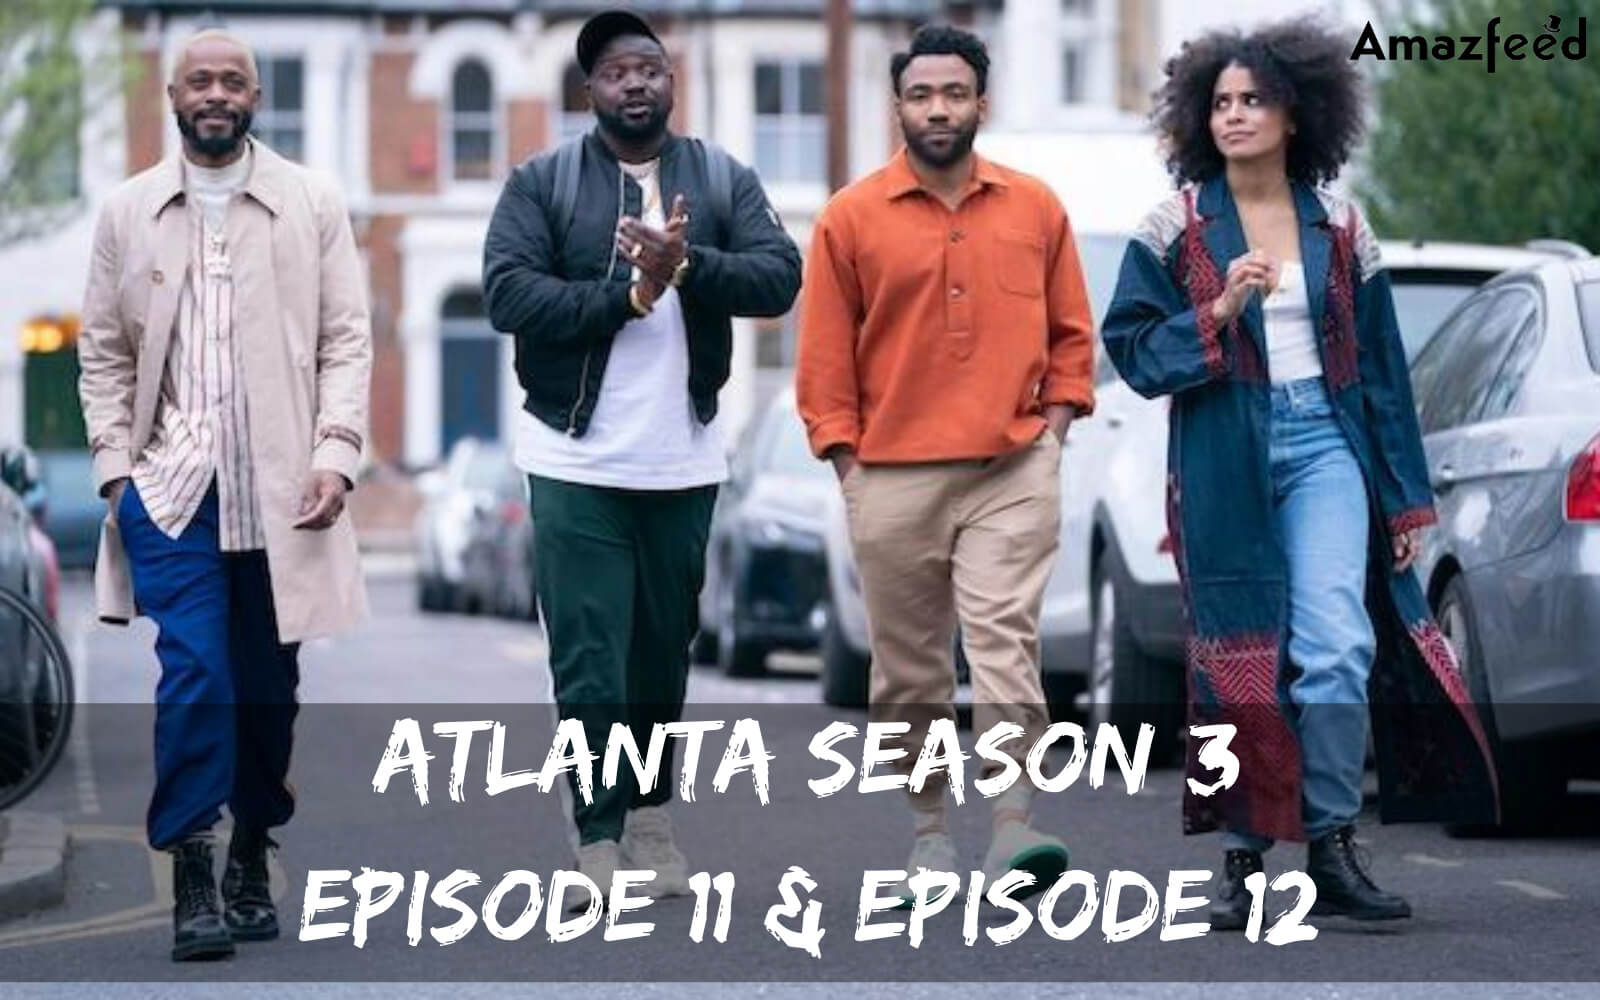 Atlanta Season 3 Episode 11 release date